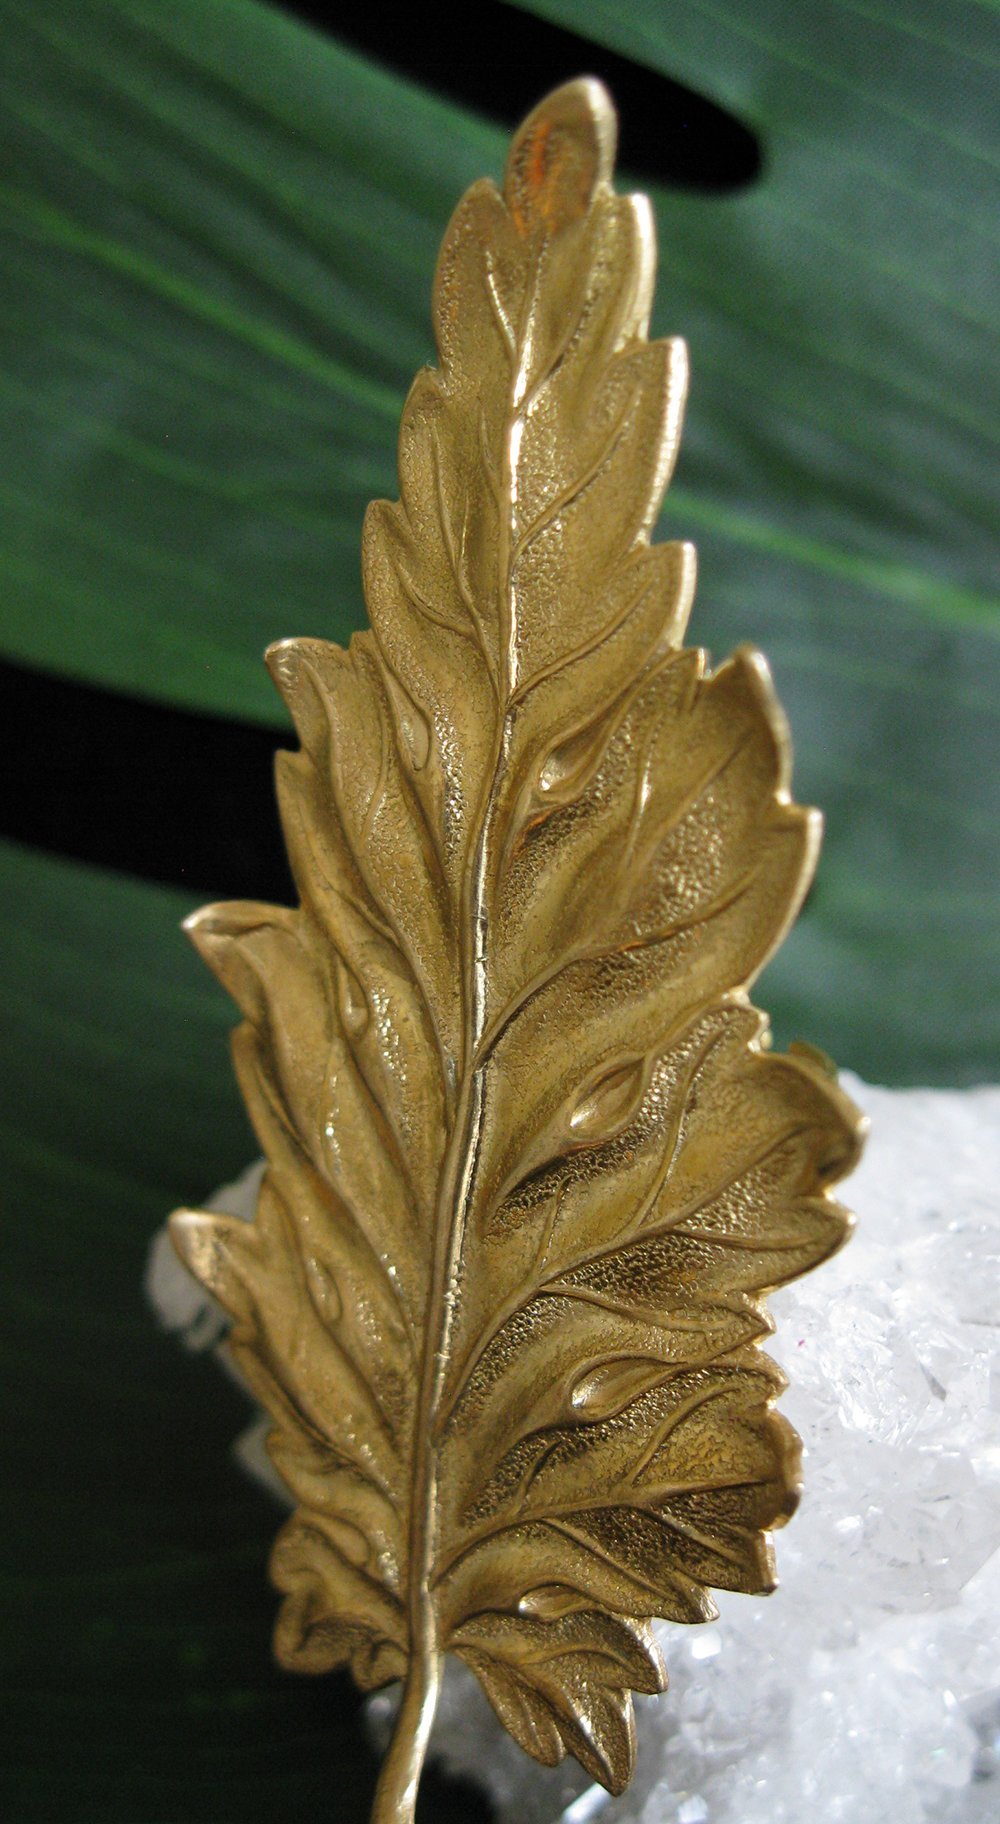 Giant Golden Leaf Ring - Golden Treasure Box